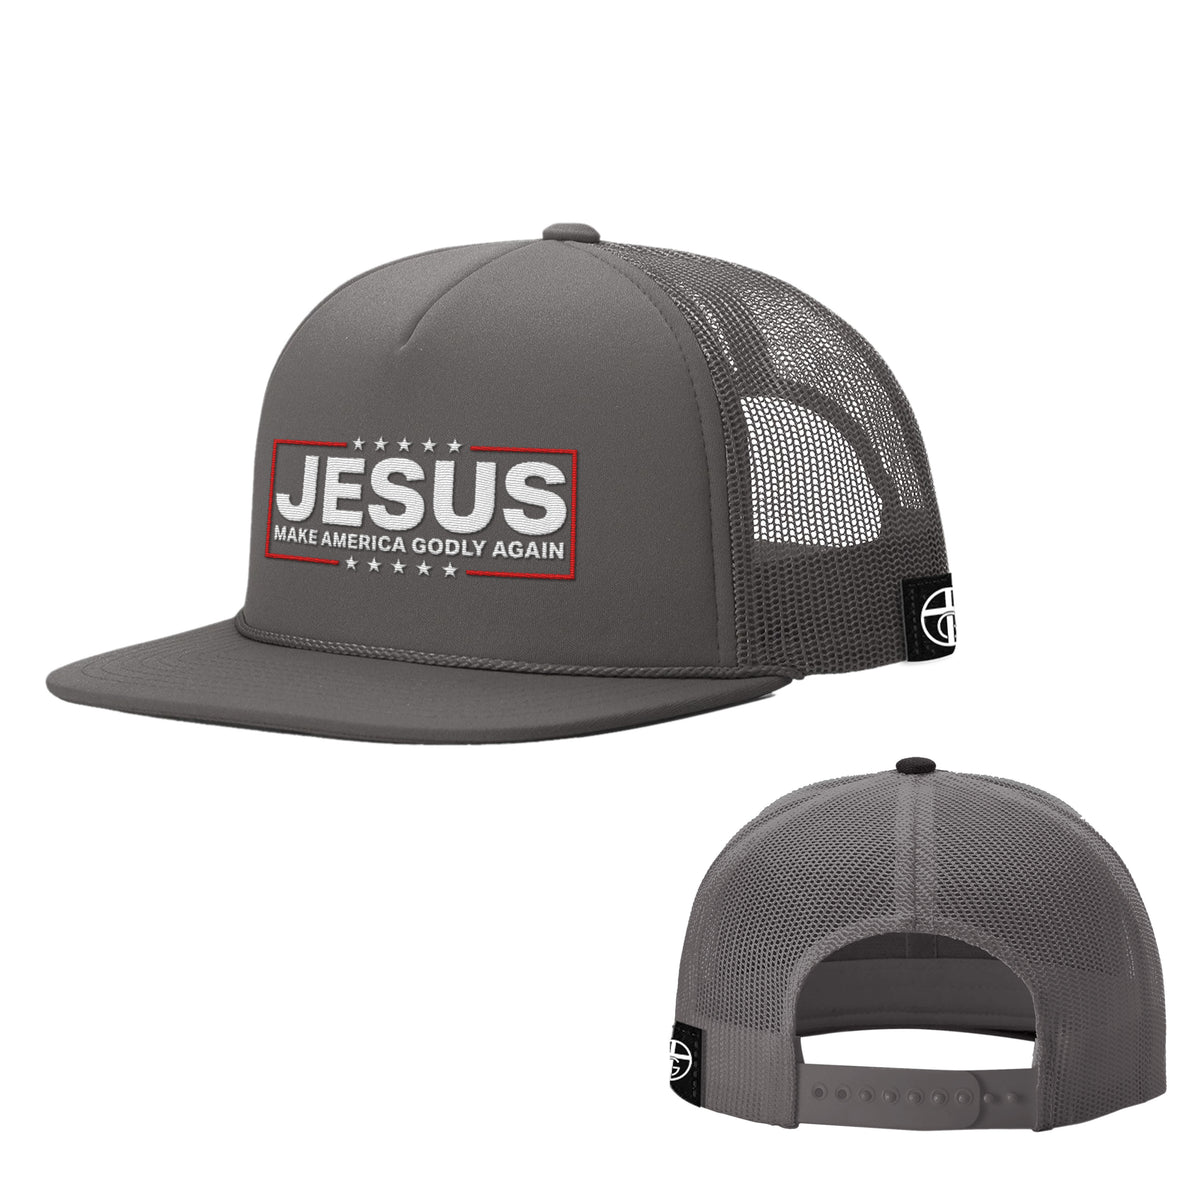 Jesus Make America Godly Again Foam Trucker Hats